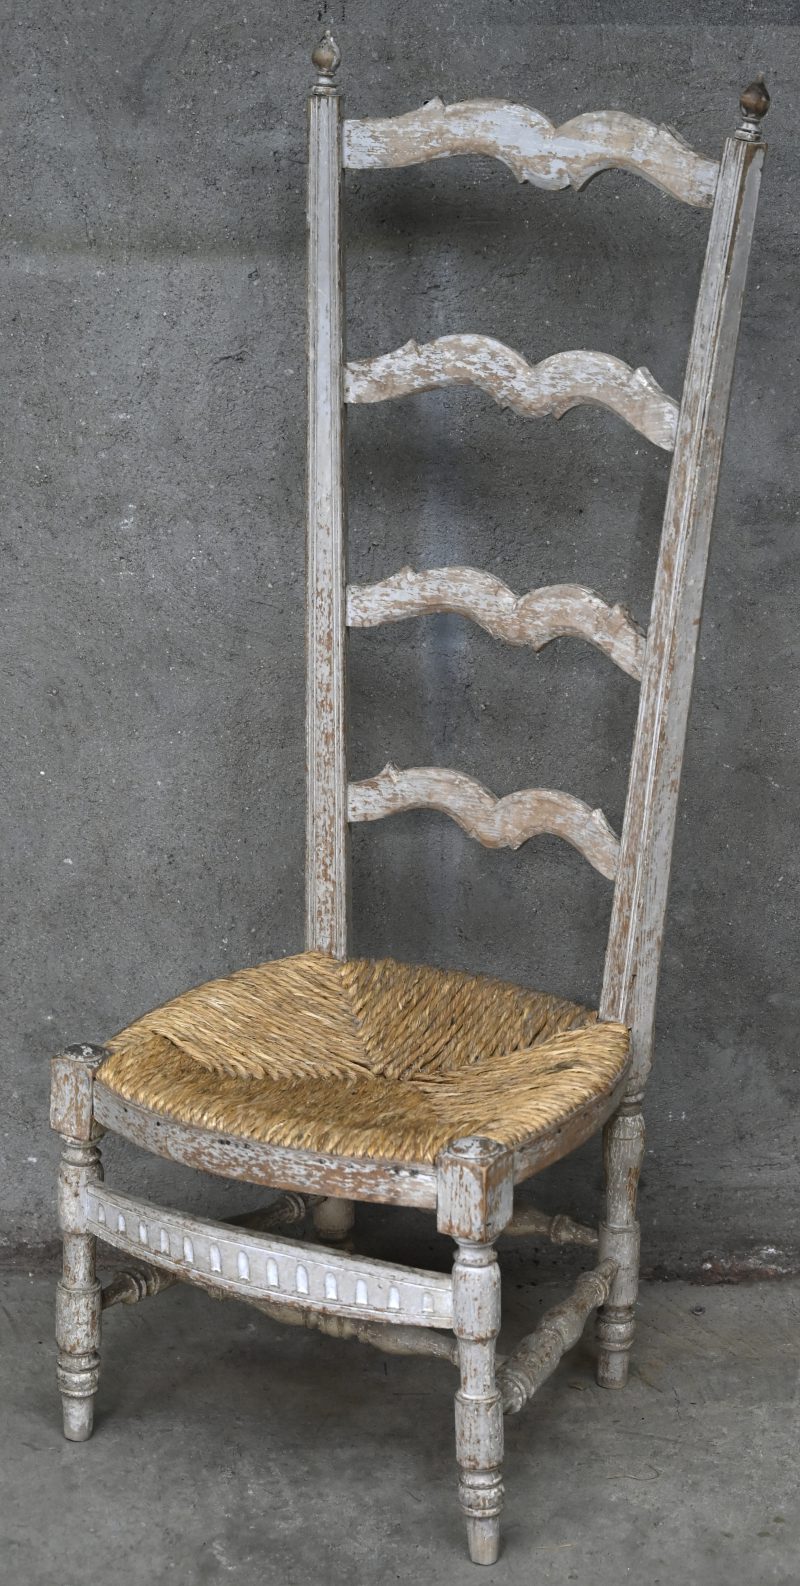 Een grijsgepatineerde houten kerkstoel met hoge rug en rieten zit.